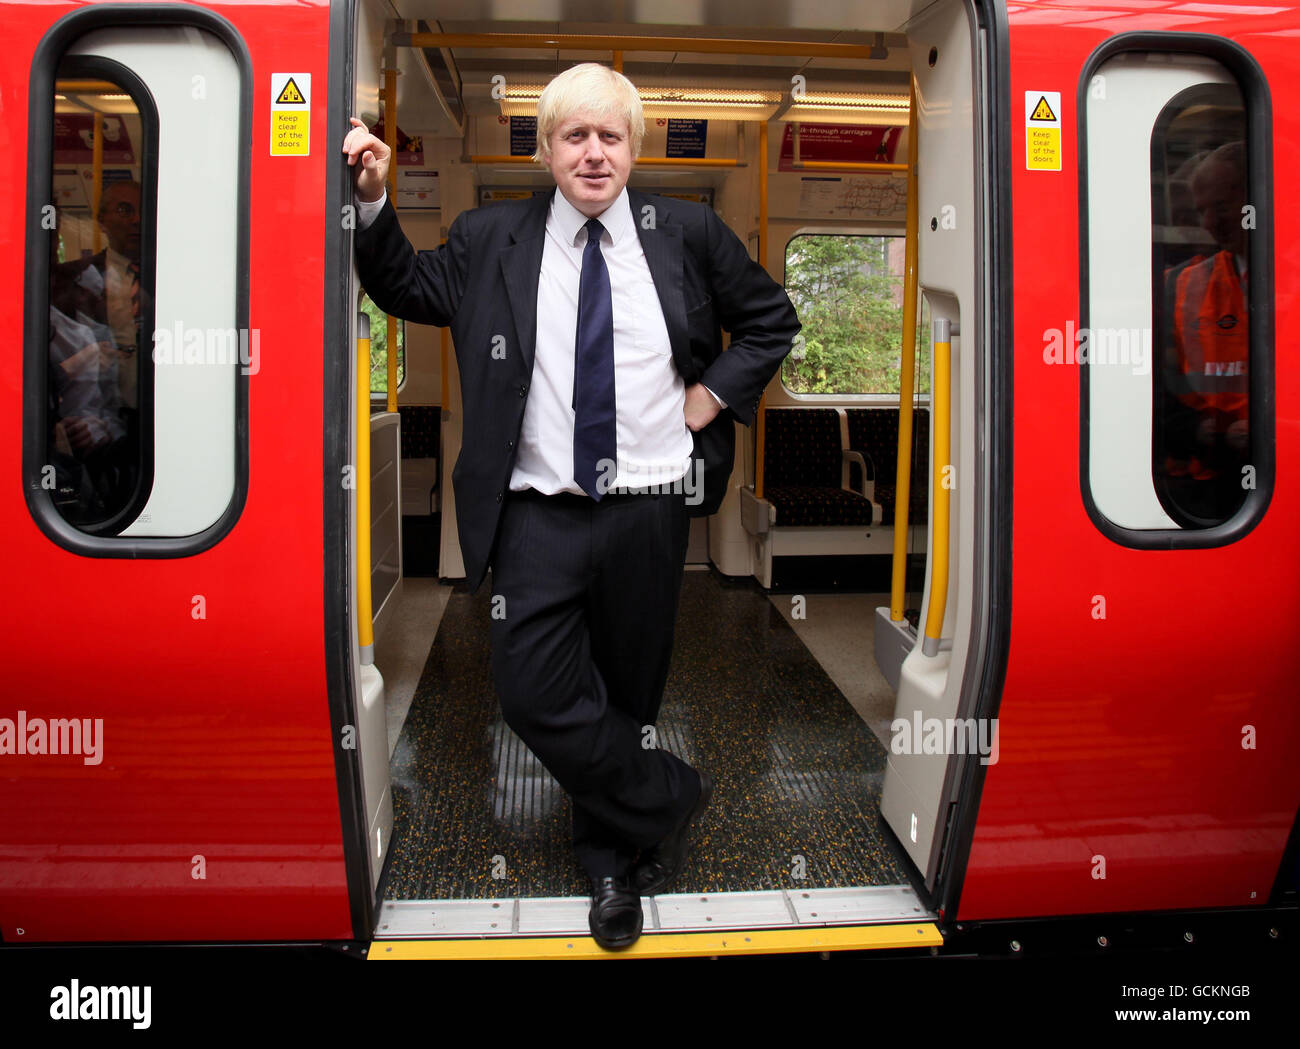 Il sindaco di Londra Boris Johnson si trova all'ingresso del primo nuovo treno climatizzato di Londra, nell'ambito di un programma che prevede il 40% dei treni della metropolitana climatizzati entro il 2015. Foto Stock